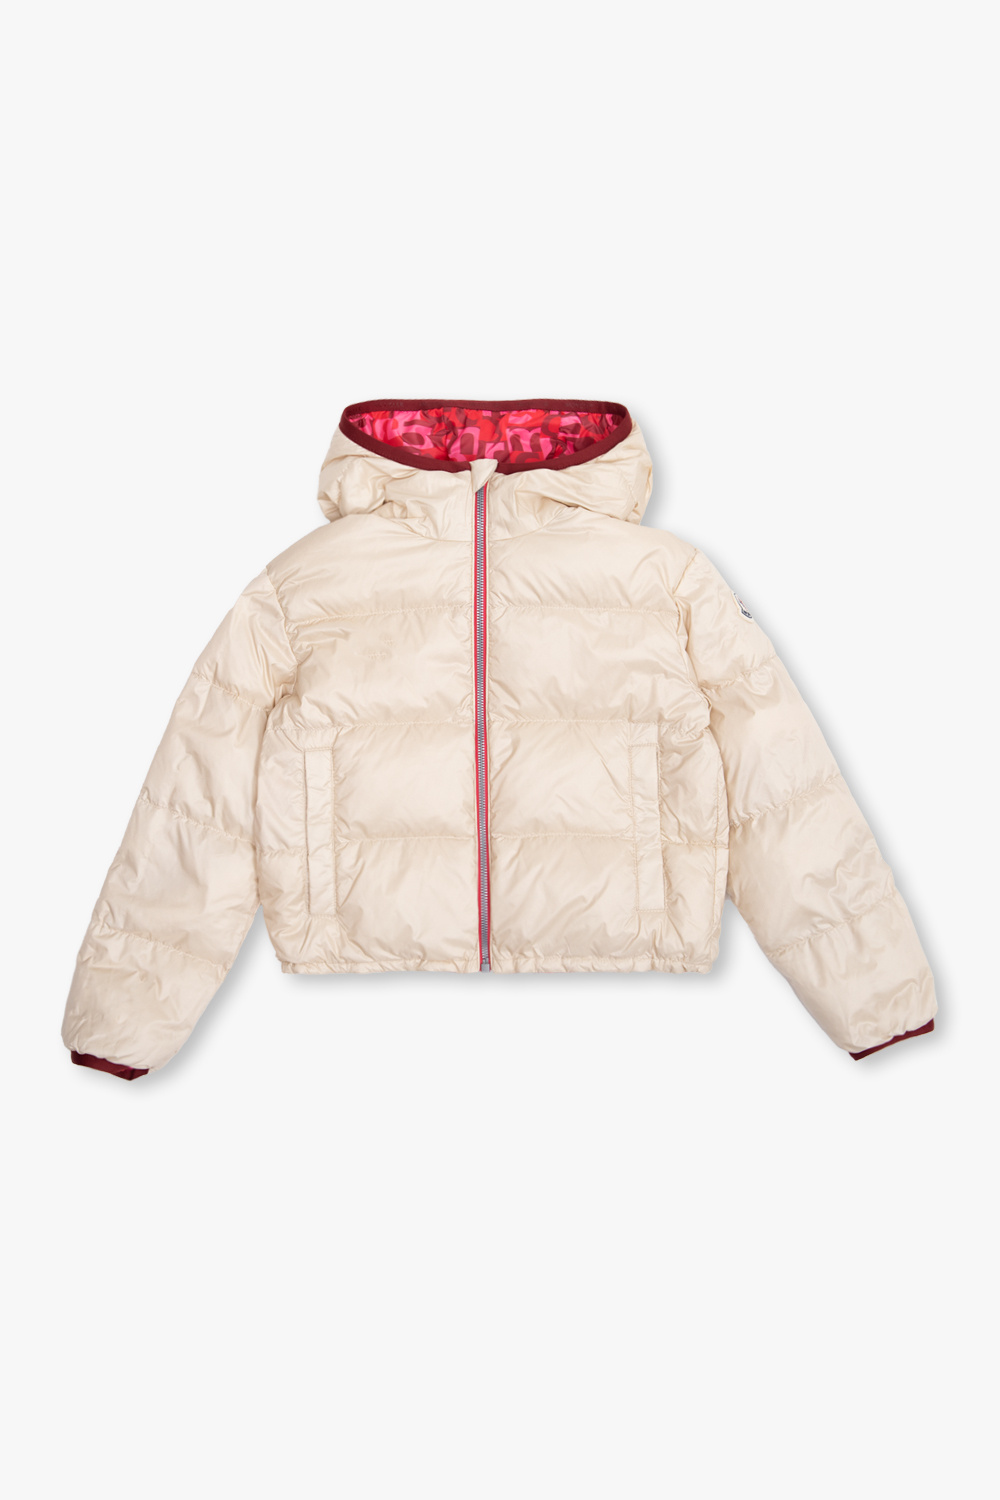 Moncler Enfant ‘Aillis’ reversible jacket